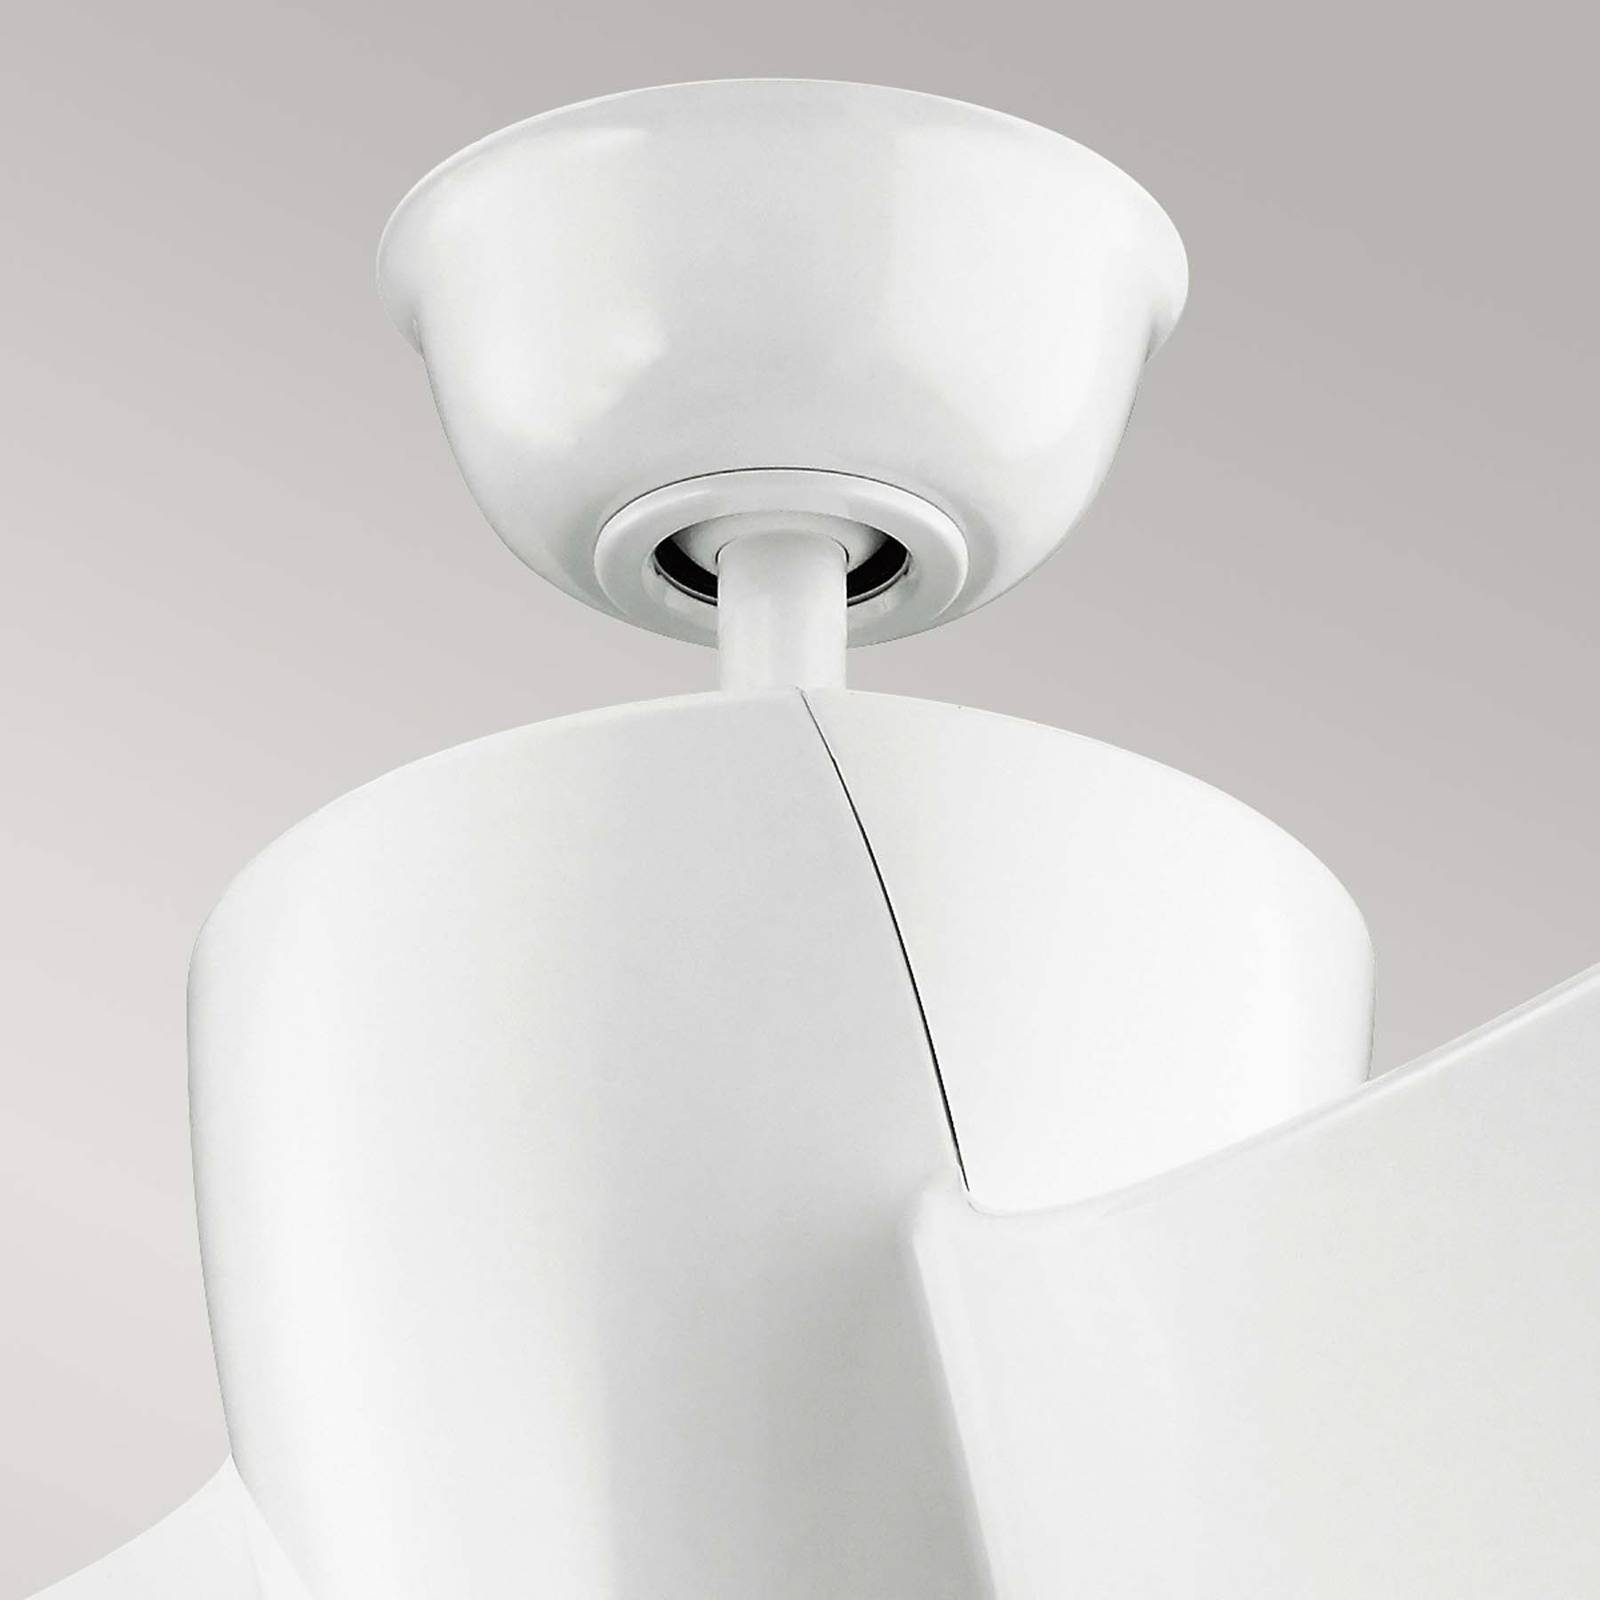 KICHLER Ventilateur de plafond LED Phree 56, à trois pales, blanc